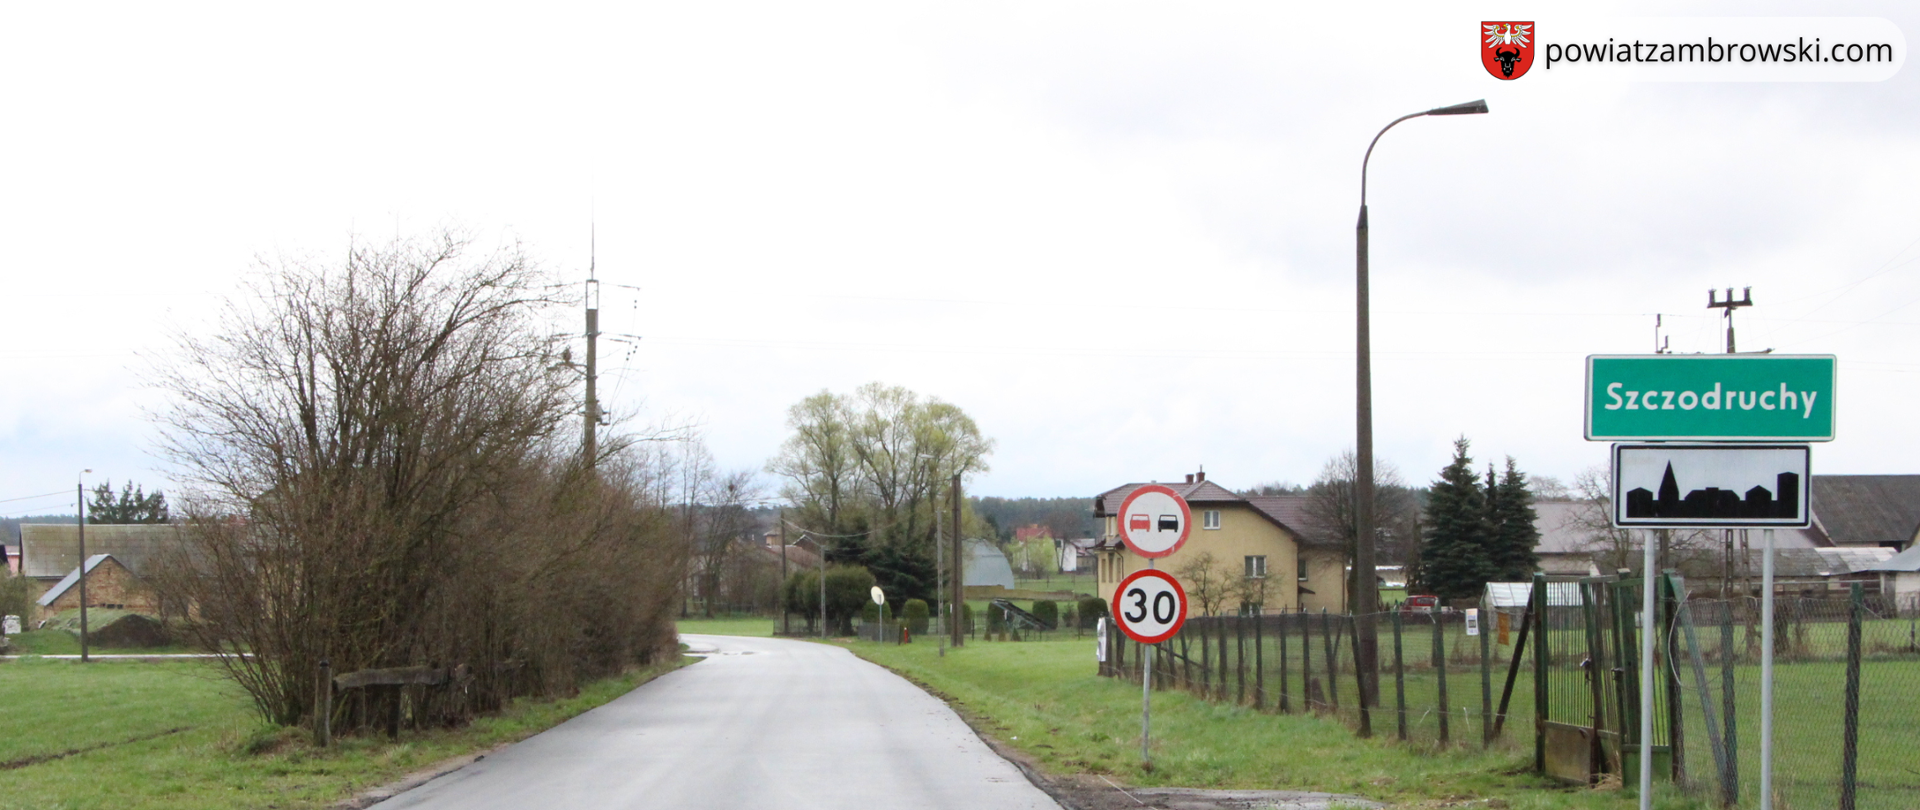 zdjęcie przebudowanej drogi powiatowej od m. Kołaki Kościelne do m. Szczodruchy, po prawej stronie widoczny jest znak z napisem miejscowości "Szczodruchy"